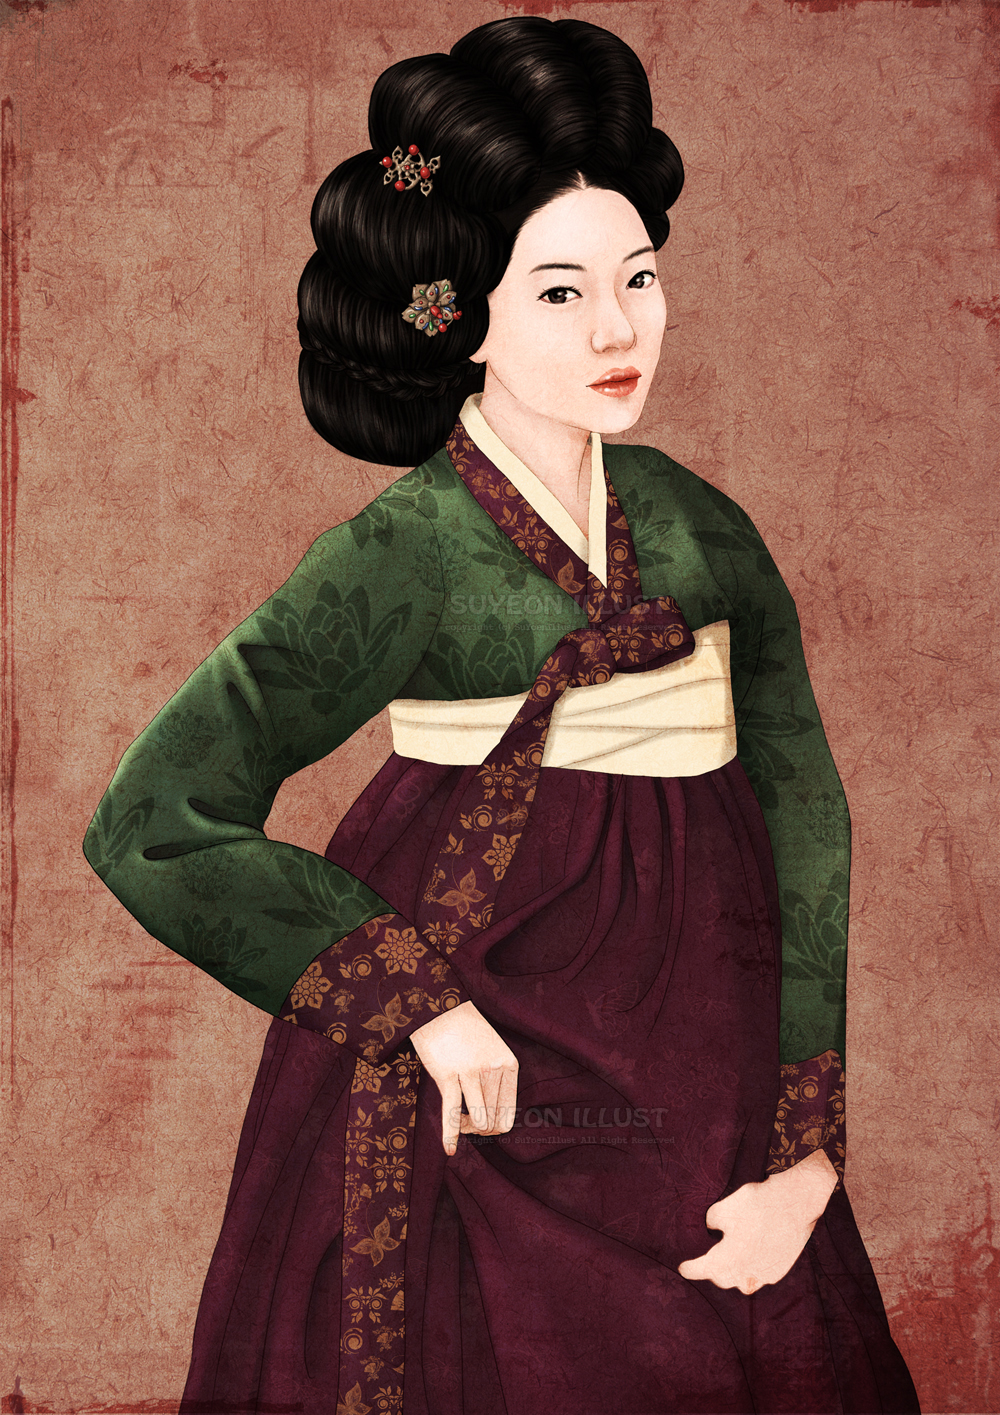 Korean traditional clothes: November 2011